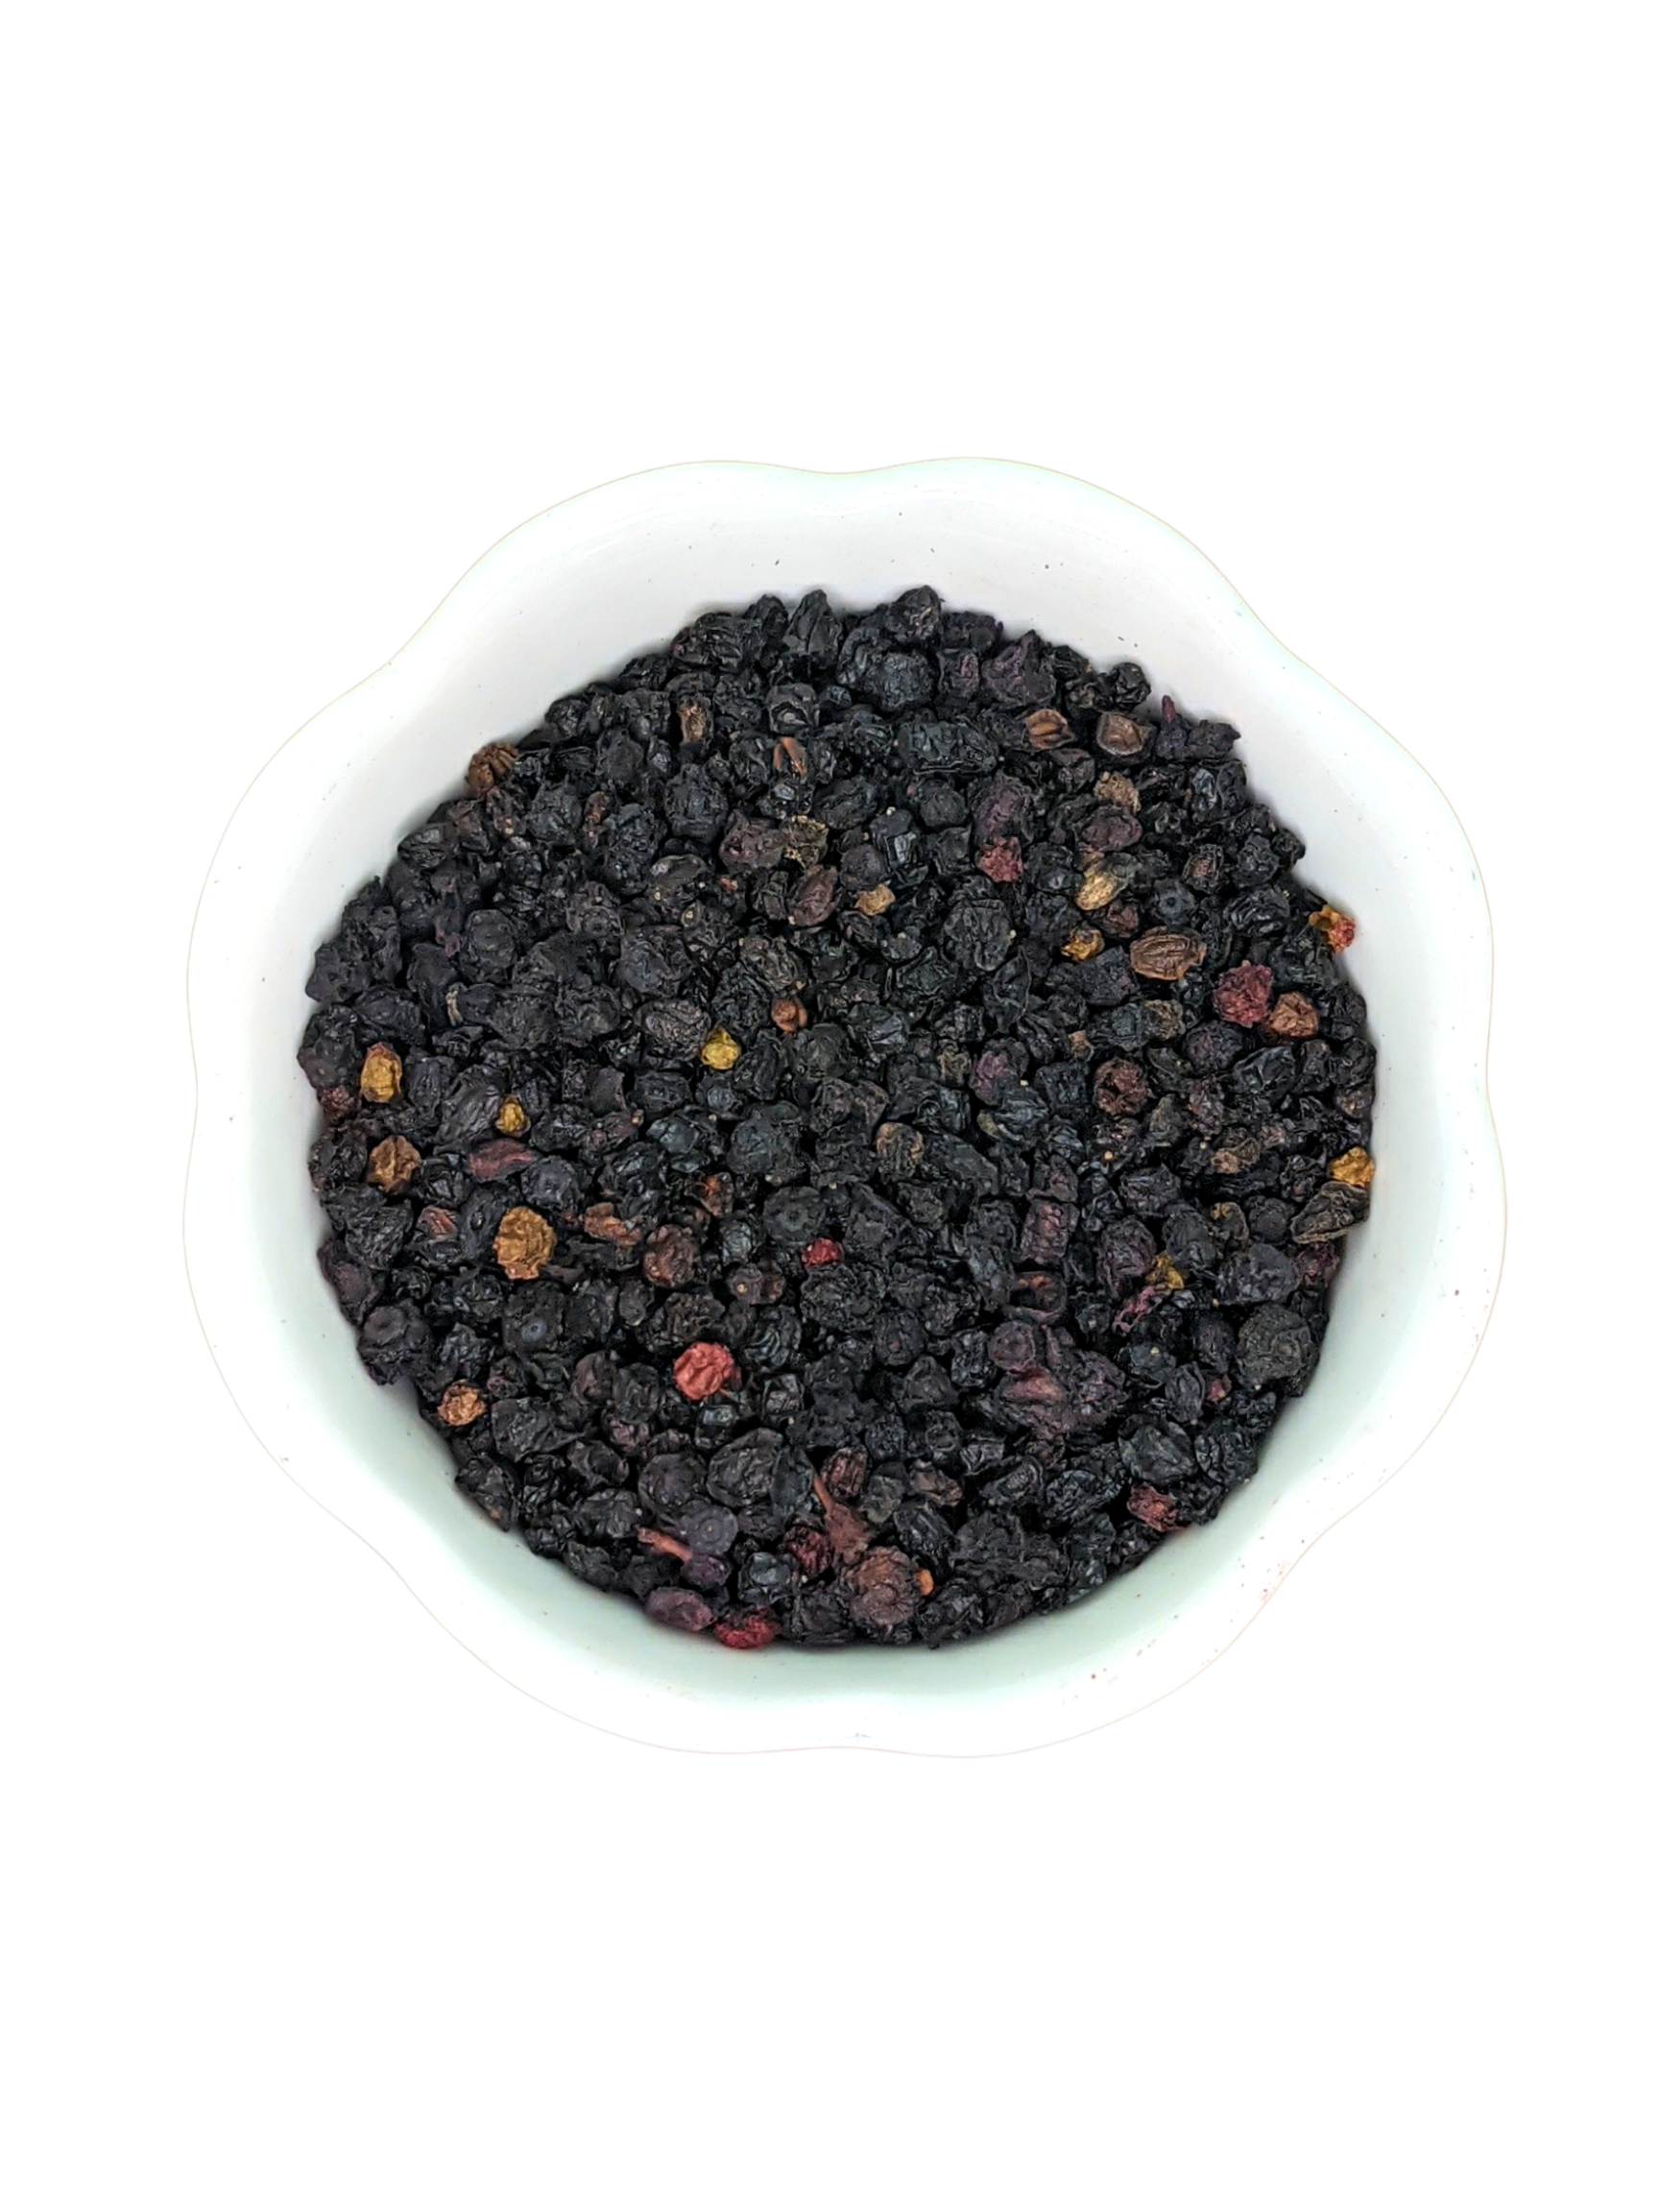 Elderberry - Elderberries